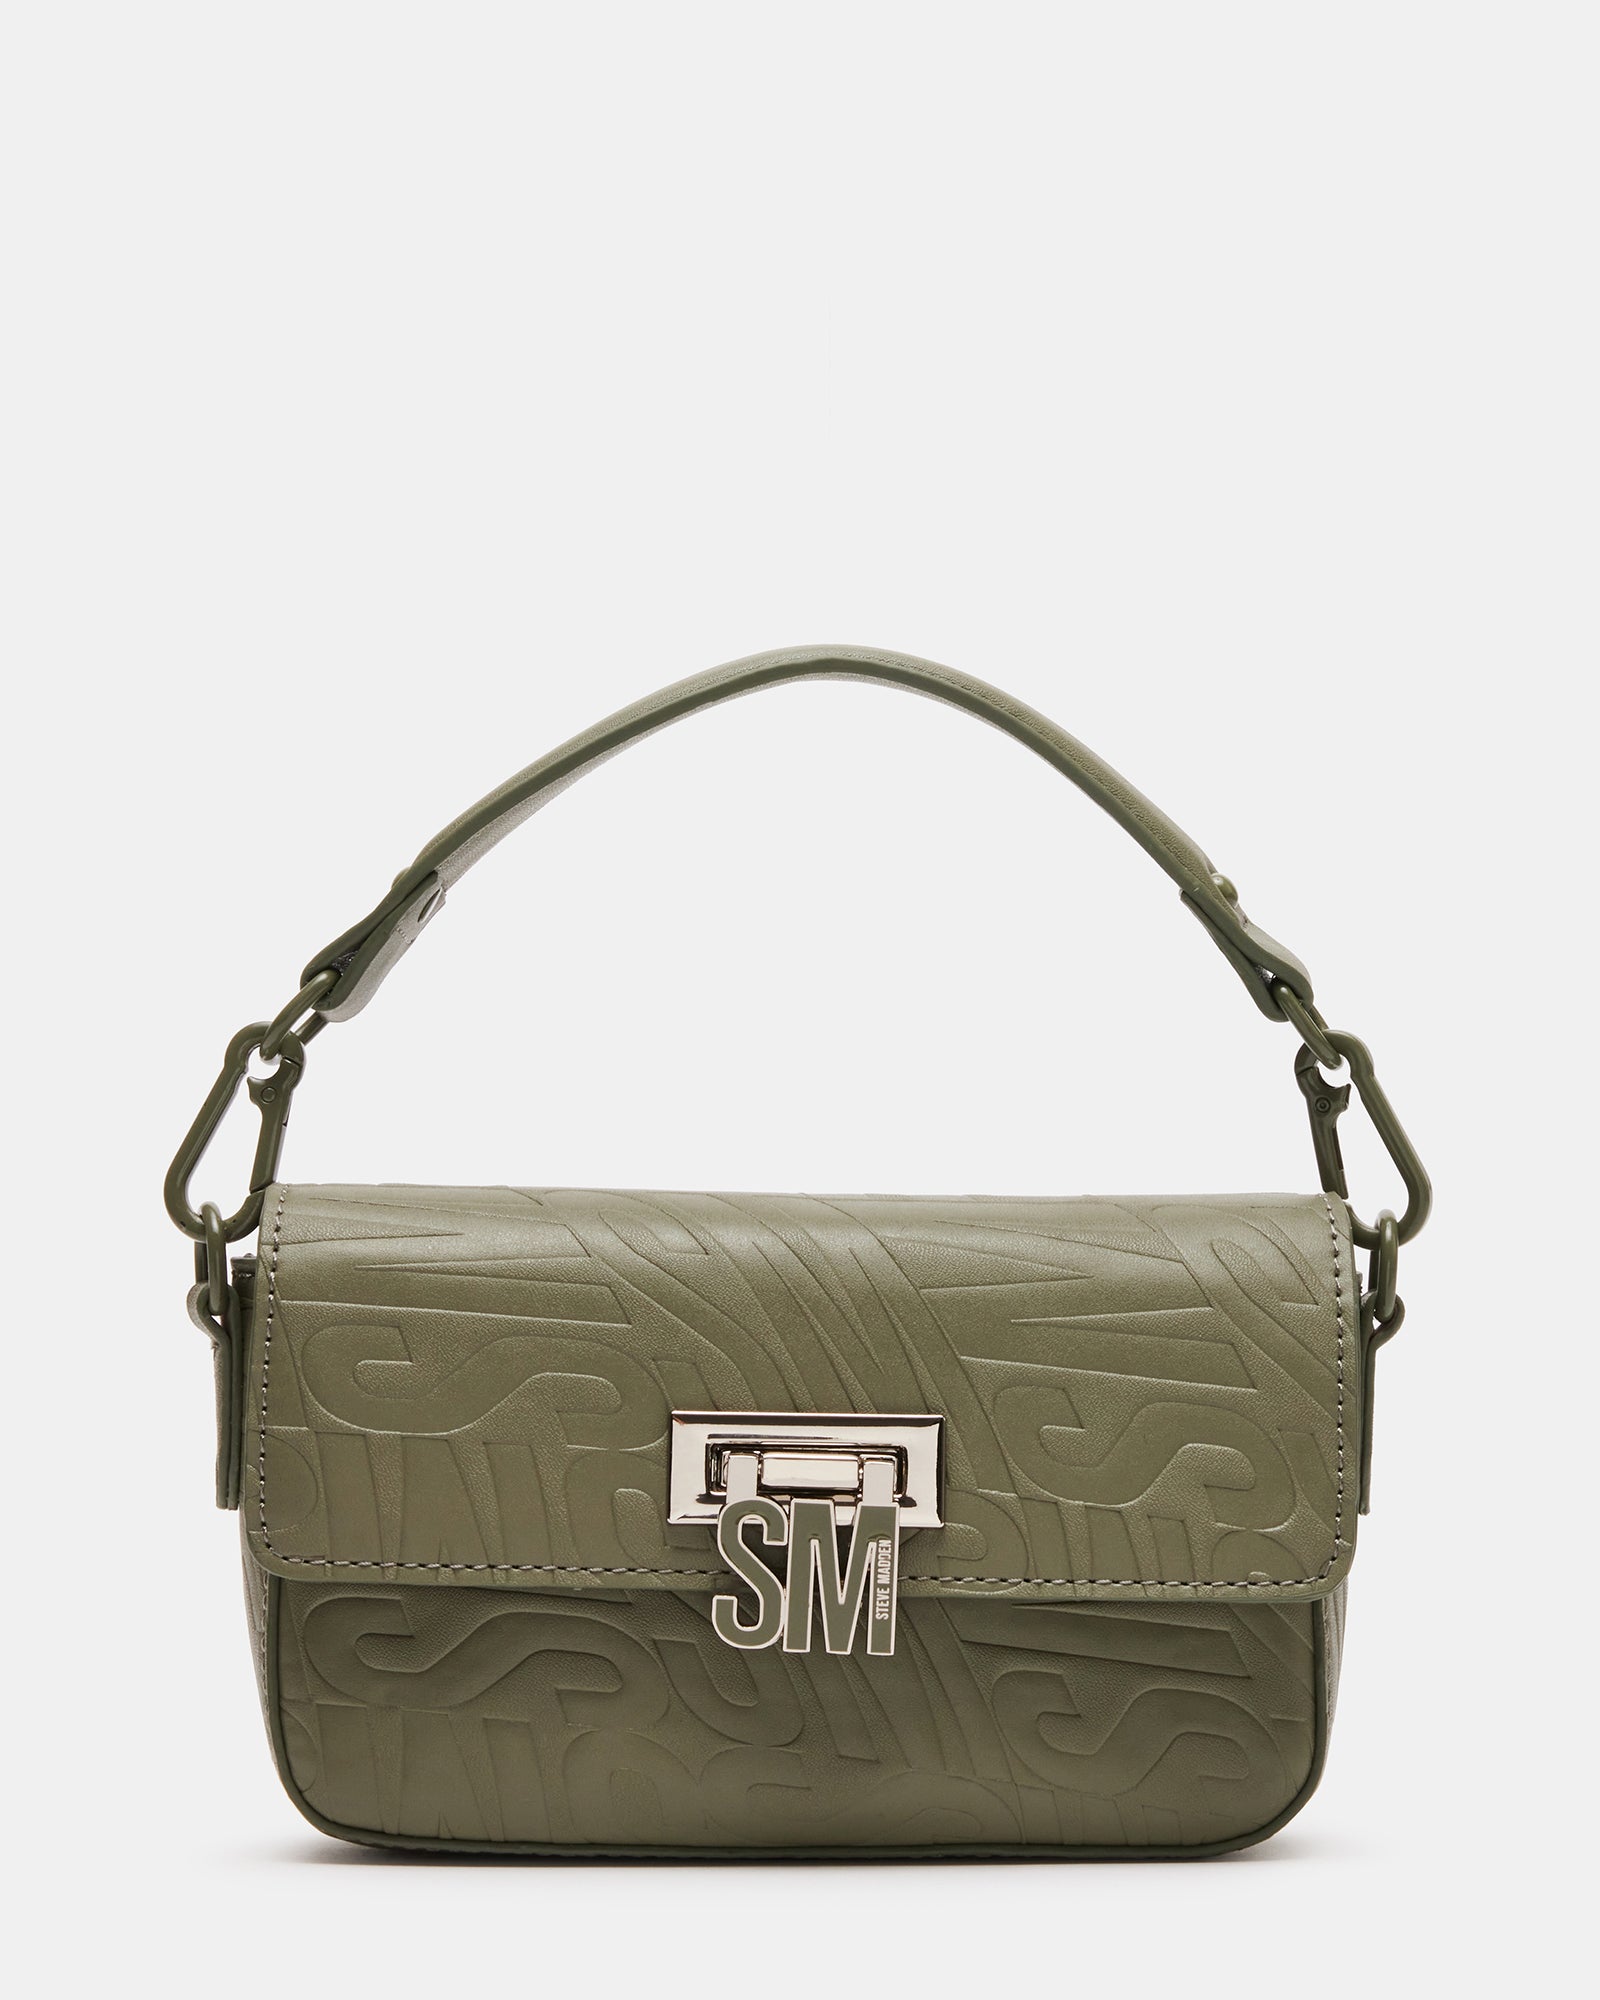 COASTER Olive Handbag | Women's Handbags – Steve Madden